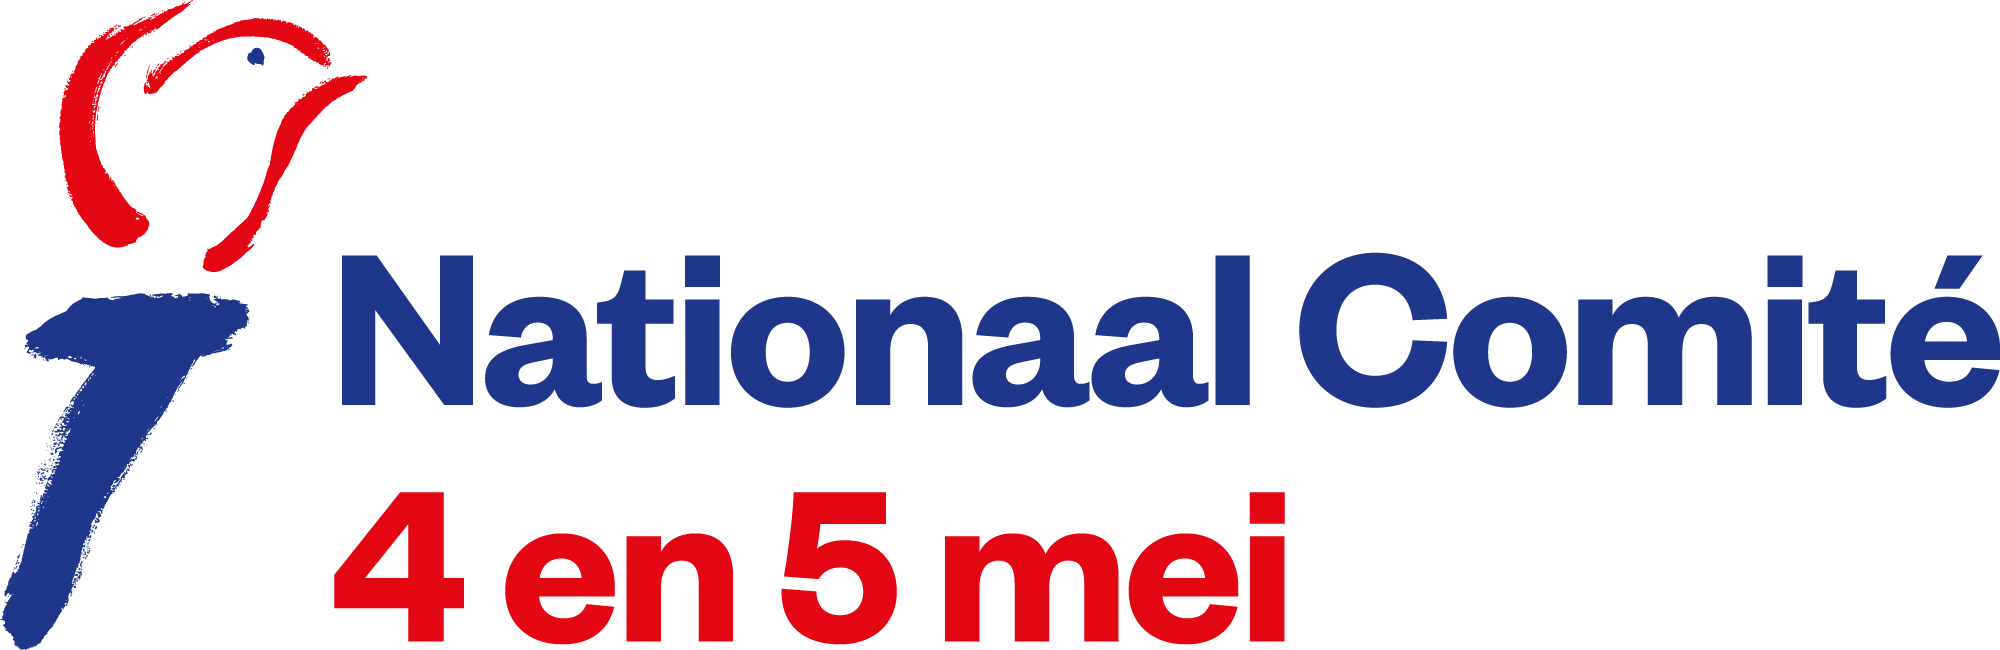 شعار "اللجنة الوطنية 4 و5 مايو".